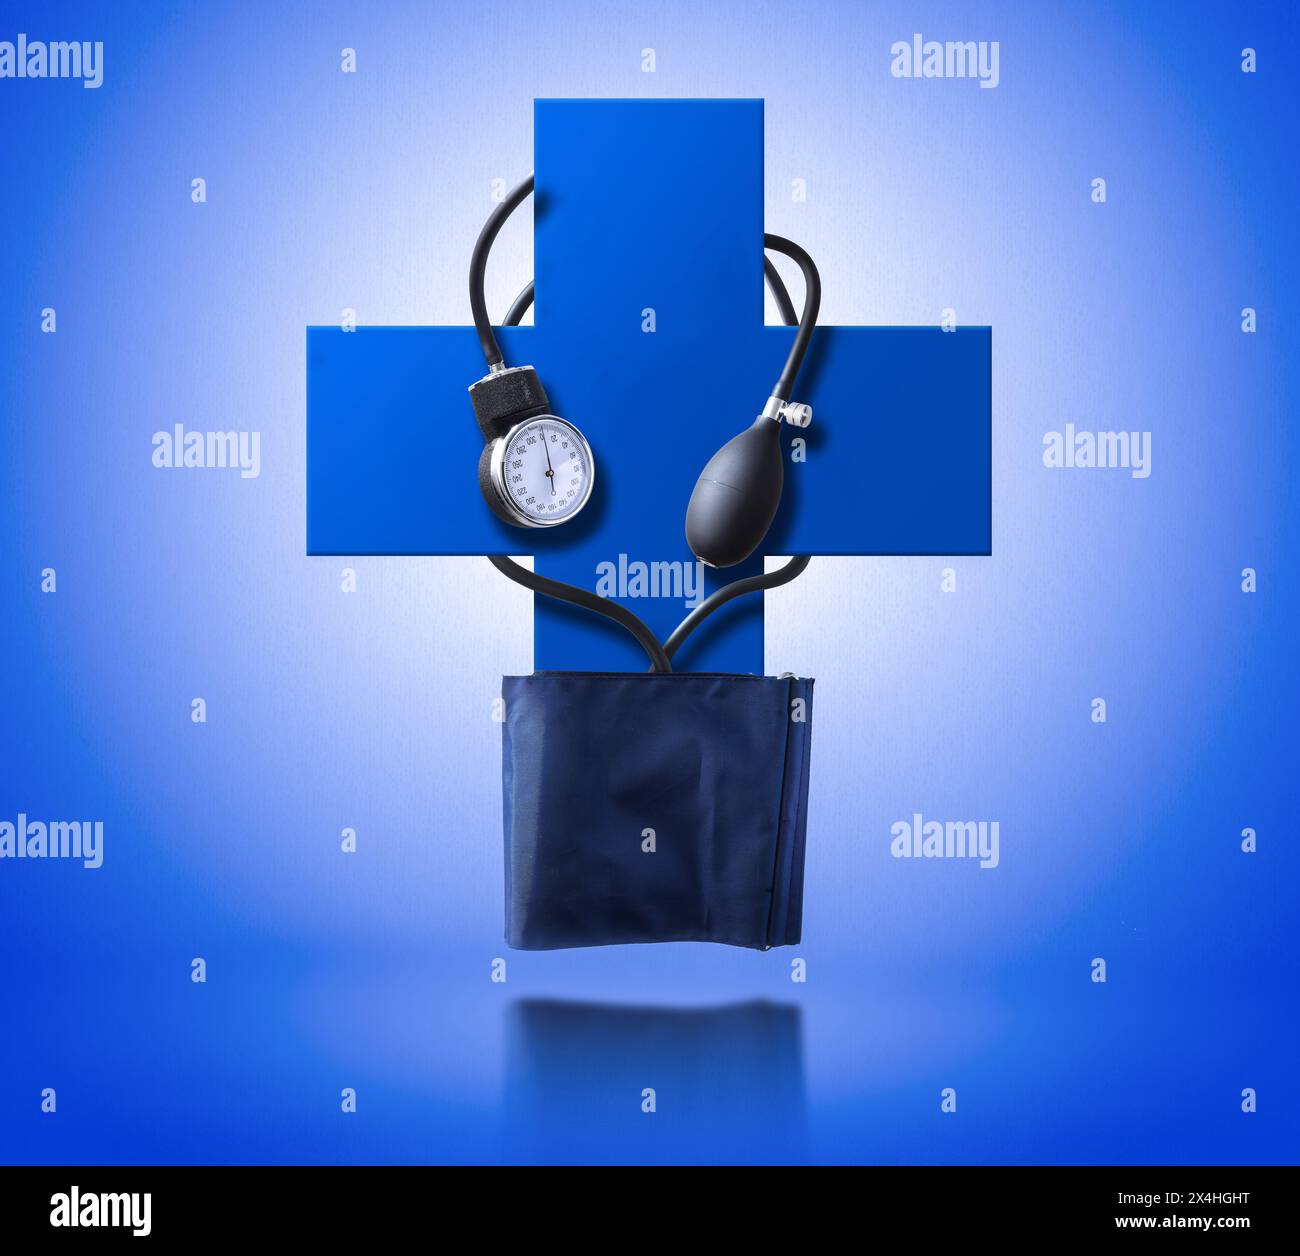 Konzeptioneller Hintergrund der medizinischen Hilfe zur Bekämpfung von Blutdruckproblemen mit Blutdruckmessgeräten, die an einem blauen Kreuz auf strukturiertem blauem g hängen Stockfoto